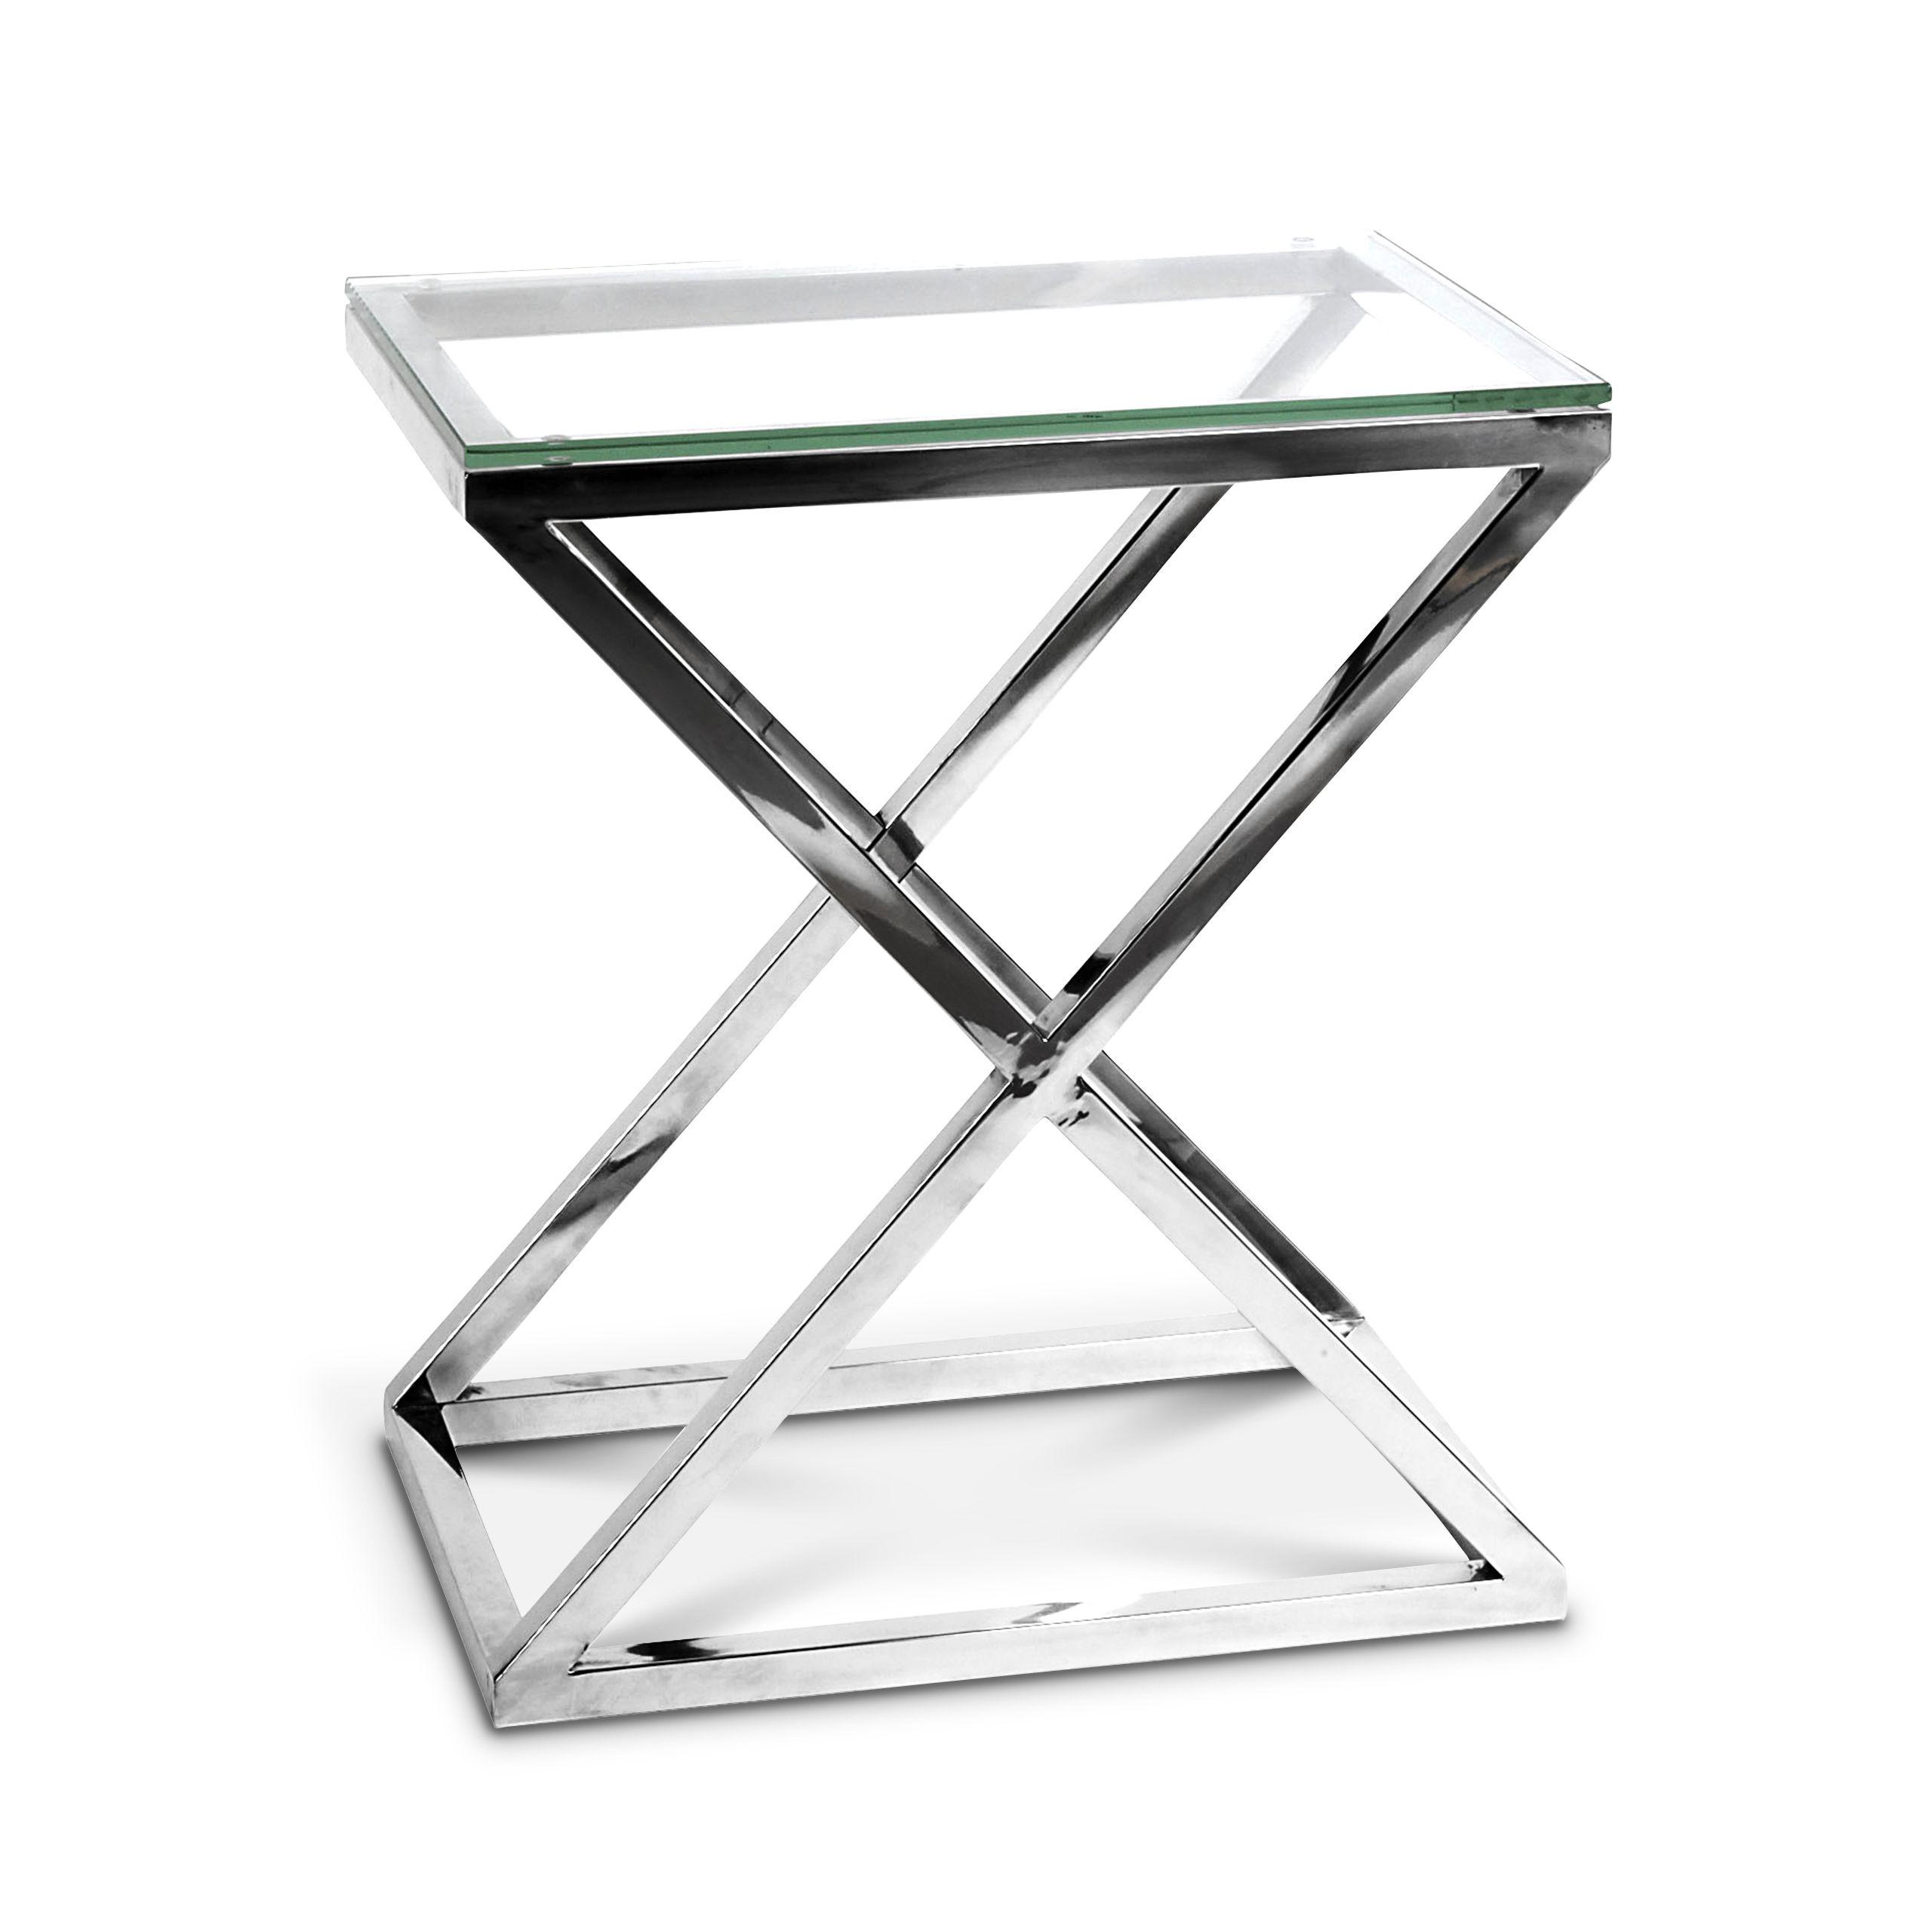 Купить Приставной столик Side Table Criss Cross High в интернет-магазине roooms.ru